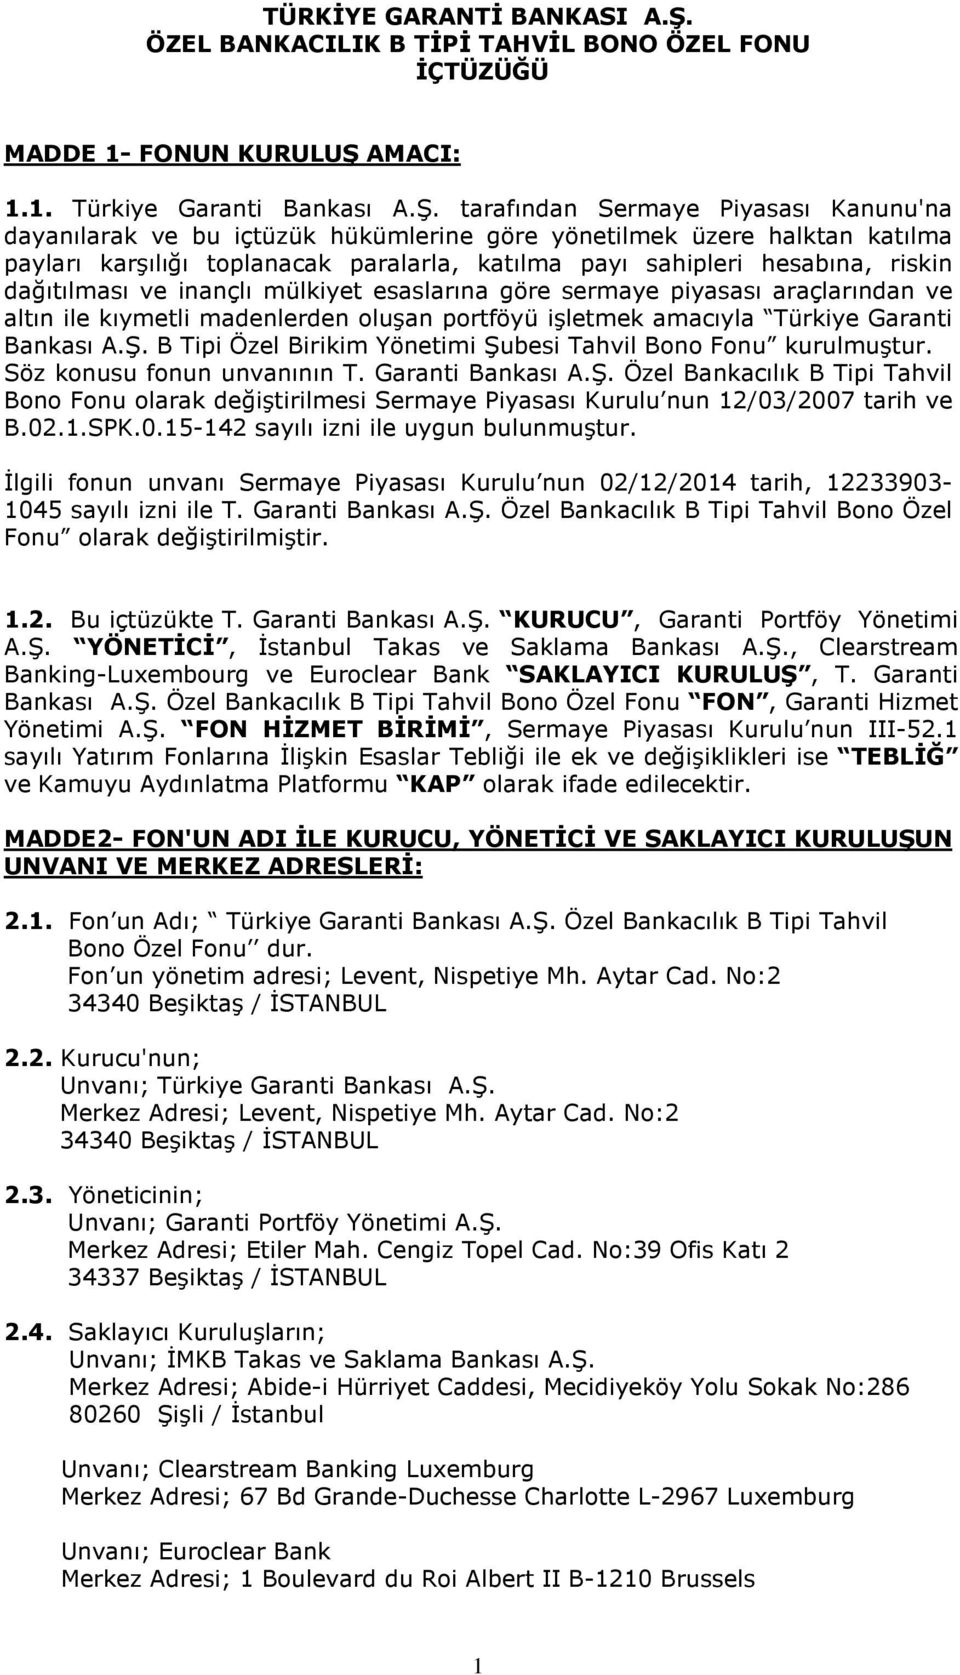 AMACI: 1.1. Türkiye Garanti Bankası A.Ş.